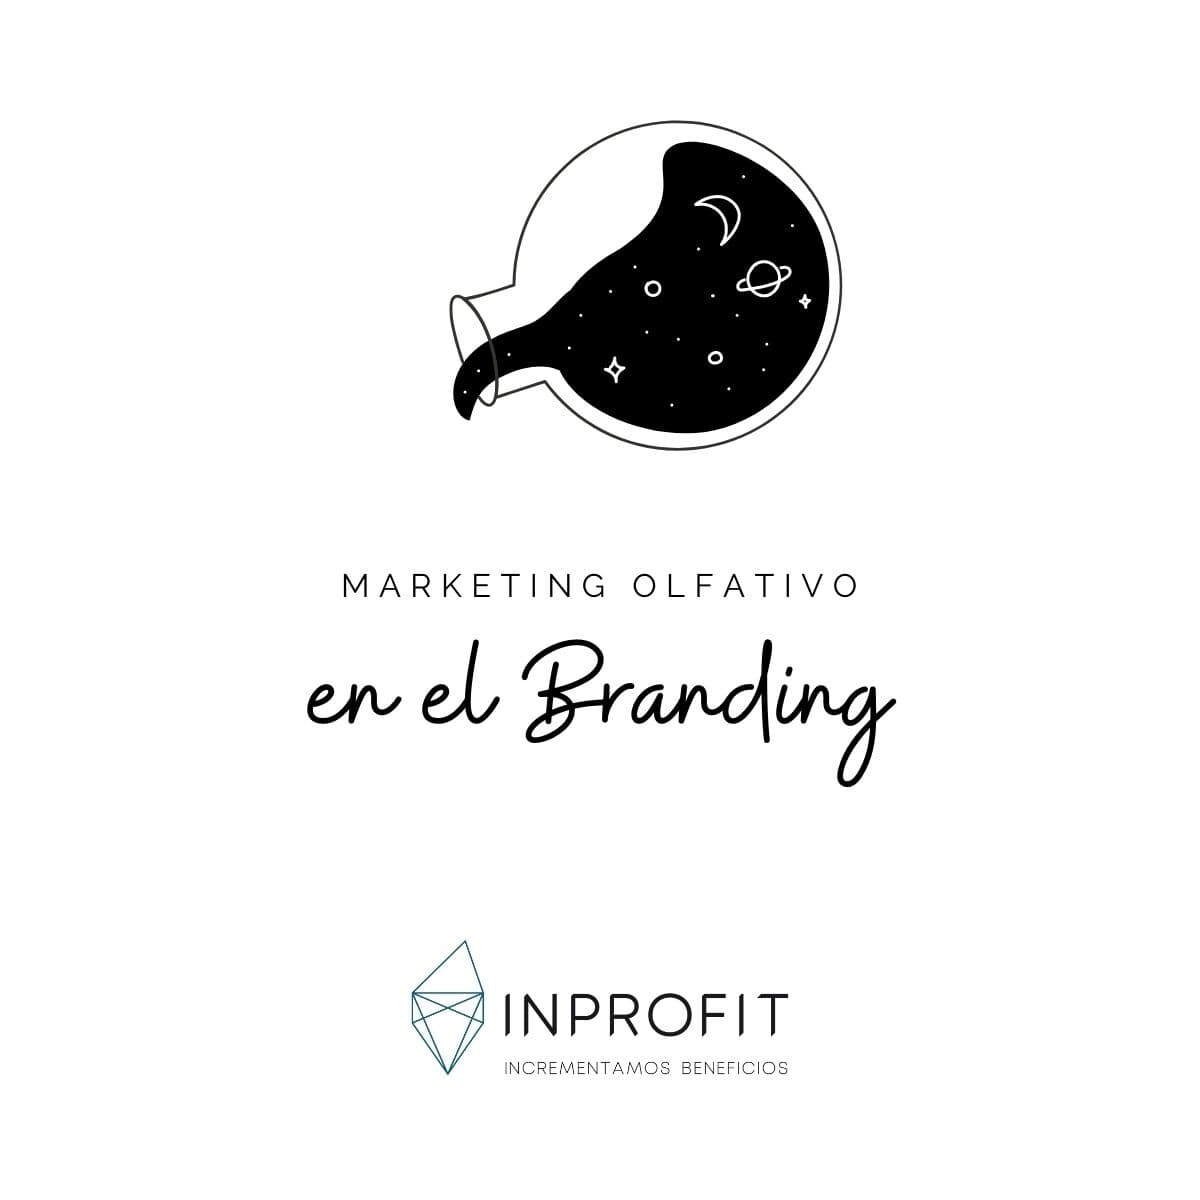 Marketing Olfativo: La clave emocional del branding